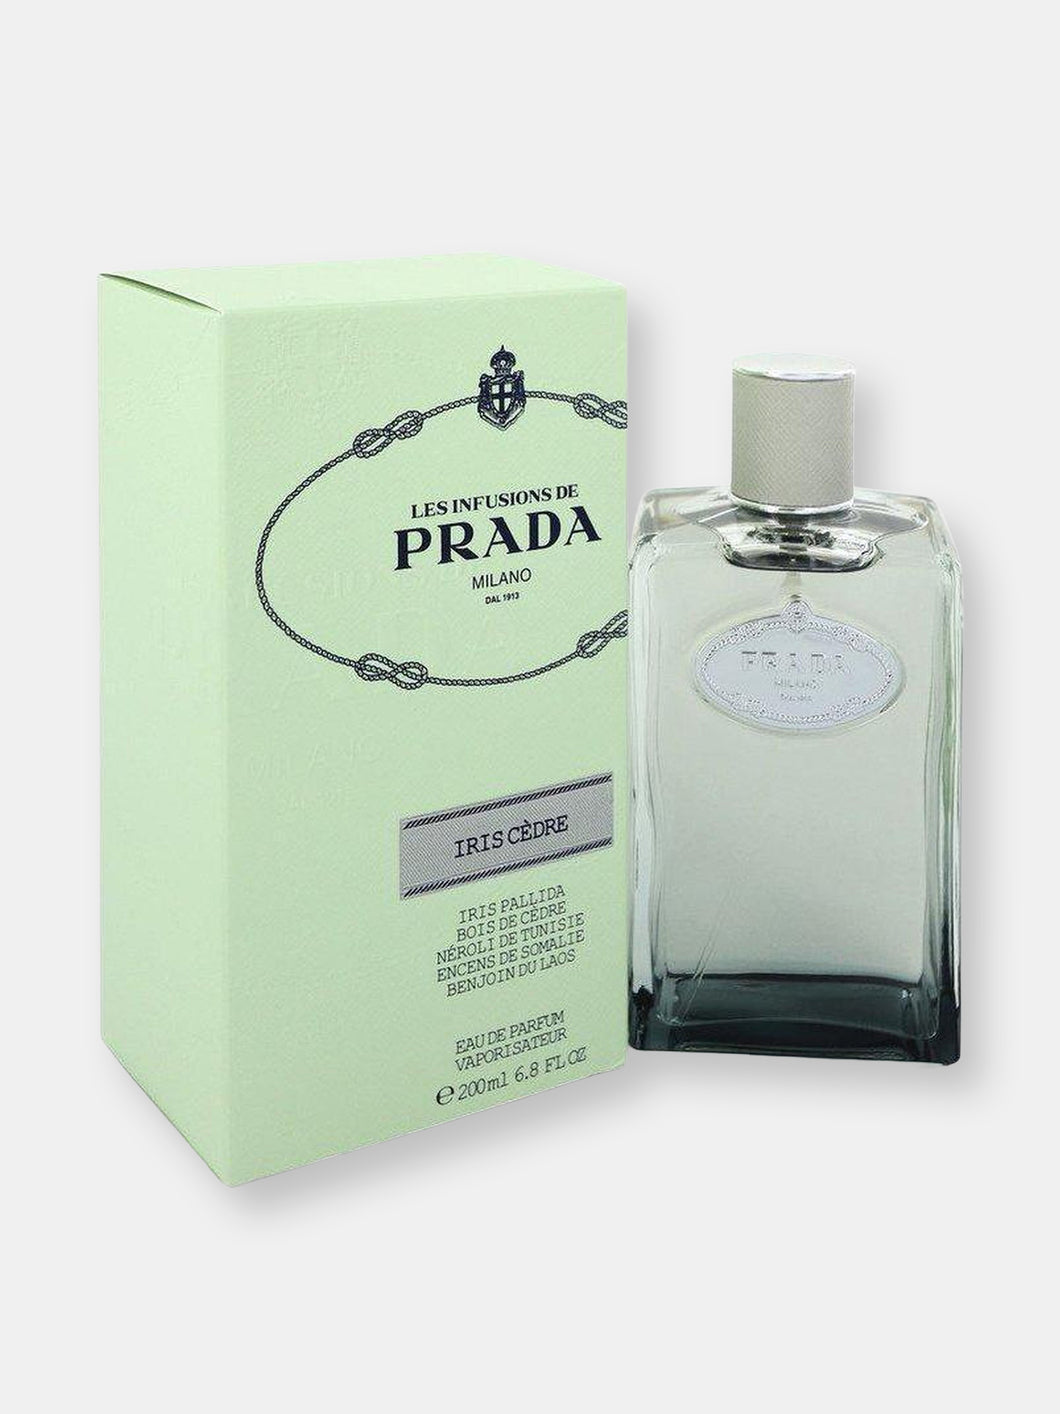 Prada Infusion D'Iris Cedre by Prada Eau De Parfum Spray (Unisex) 6.8 oz